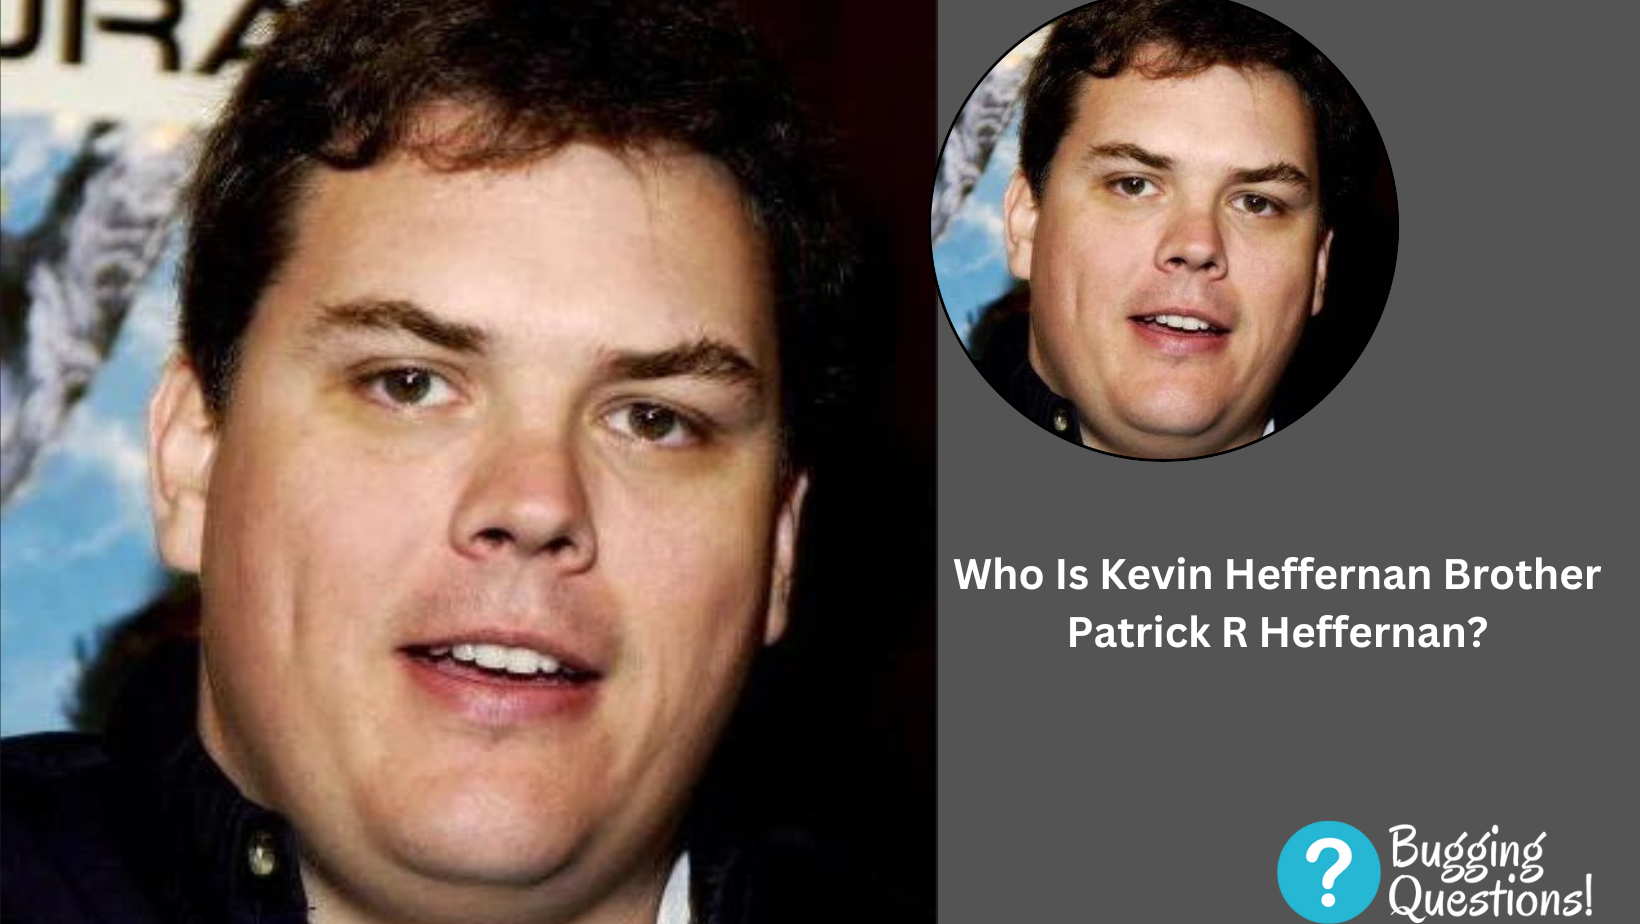 Who Is Kevin Heffernan Brother Patrick R Heffernan?